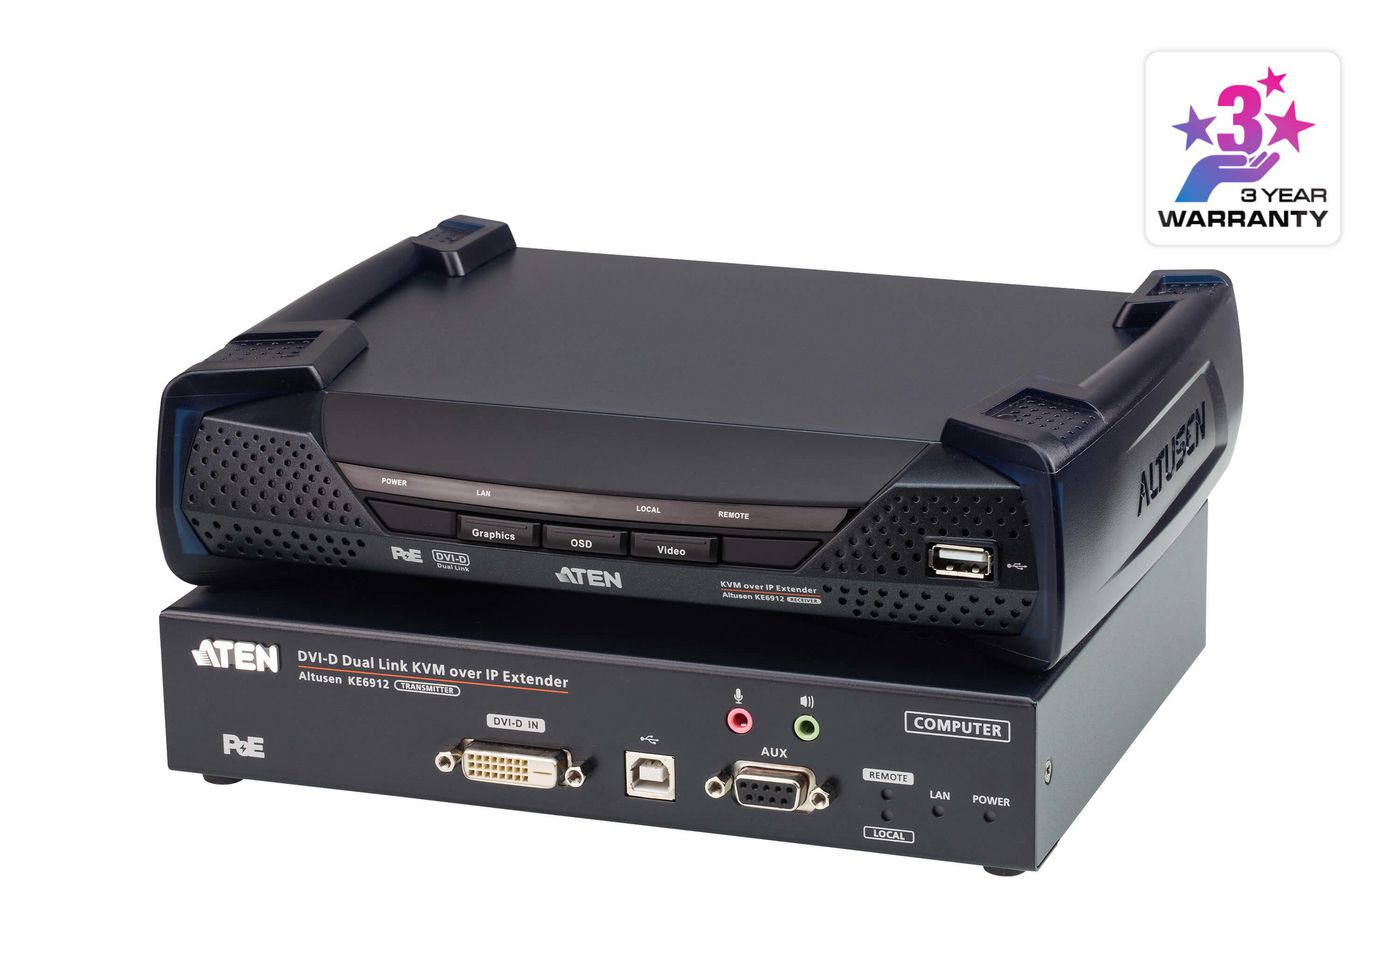 Aten KE6912-AX W125603300 2K DVI-D dual-link KVM over 